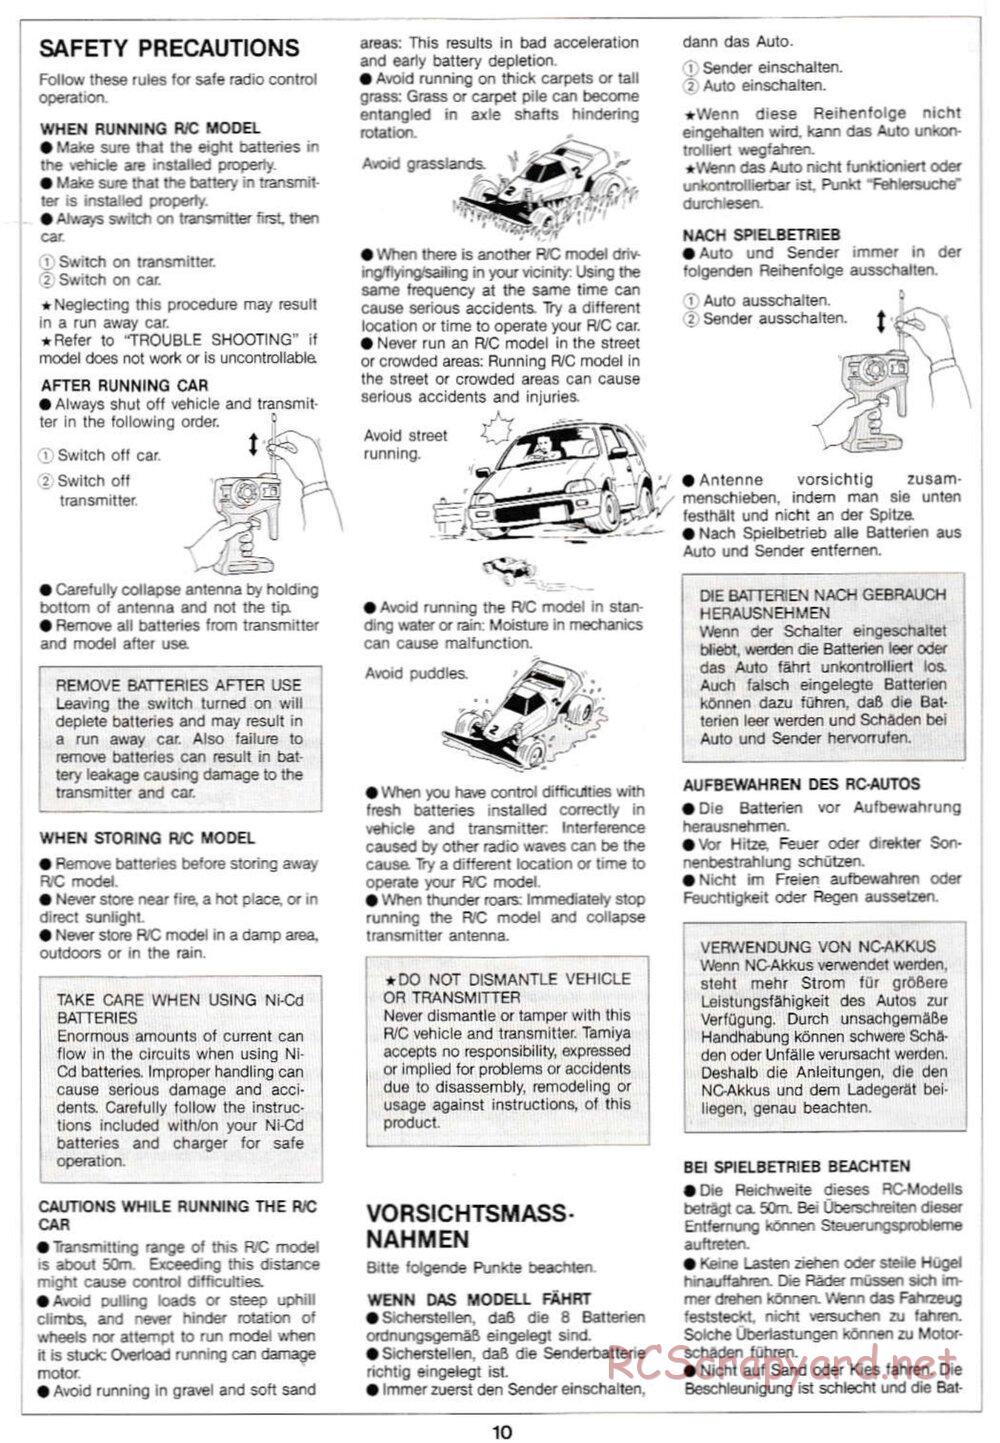 Tamiya - Super Sabre QD Chassis - Manual - Page 10